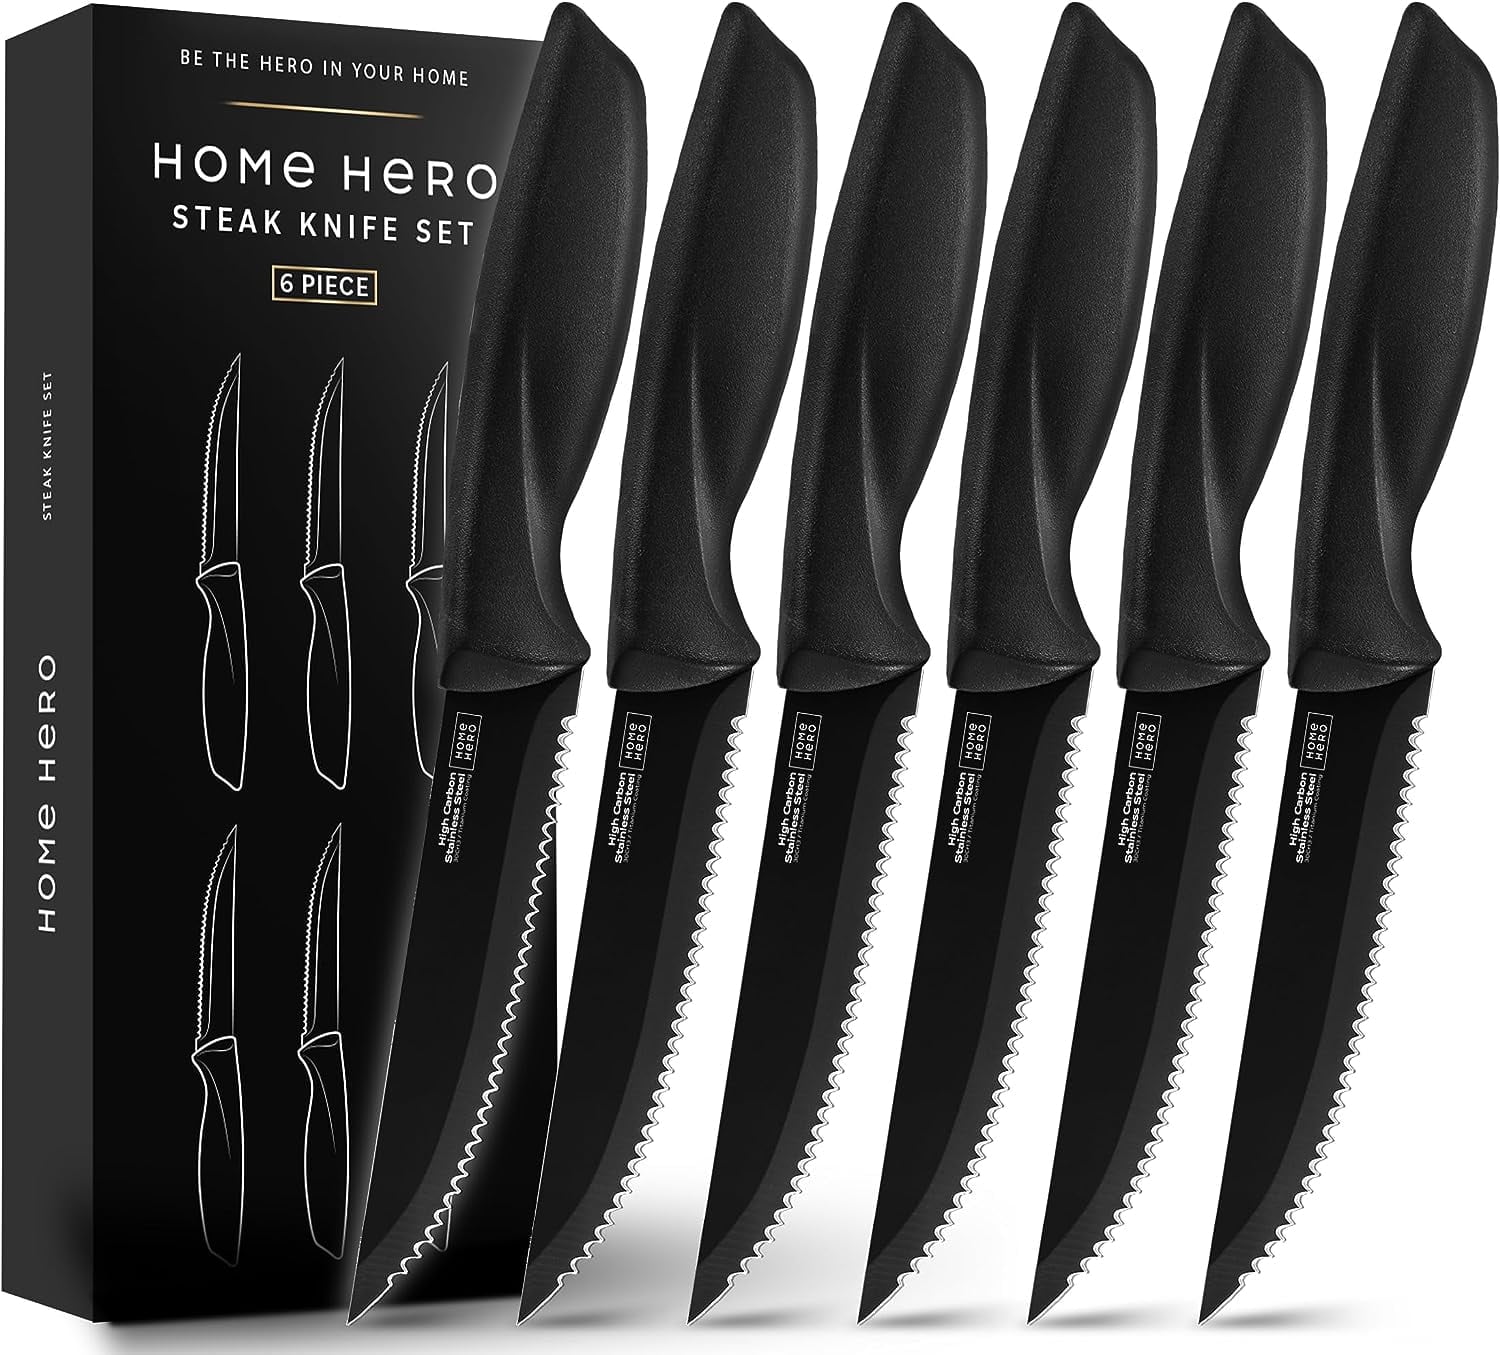 Case XX Kitchen Cutlery Steak Knives Walnut Wood 6-Knife Set 11078